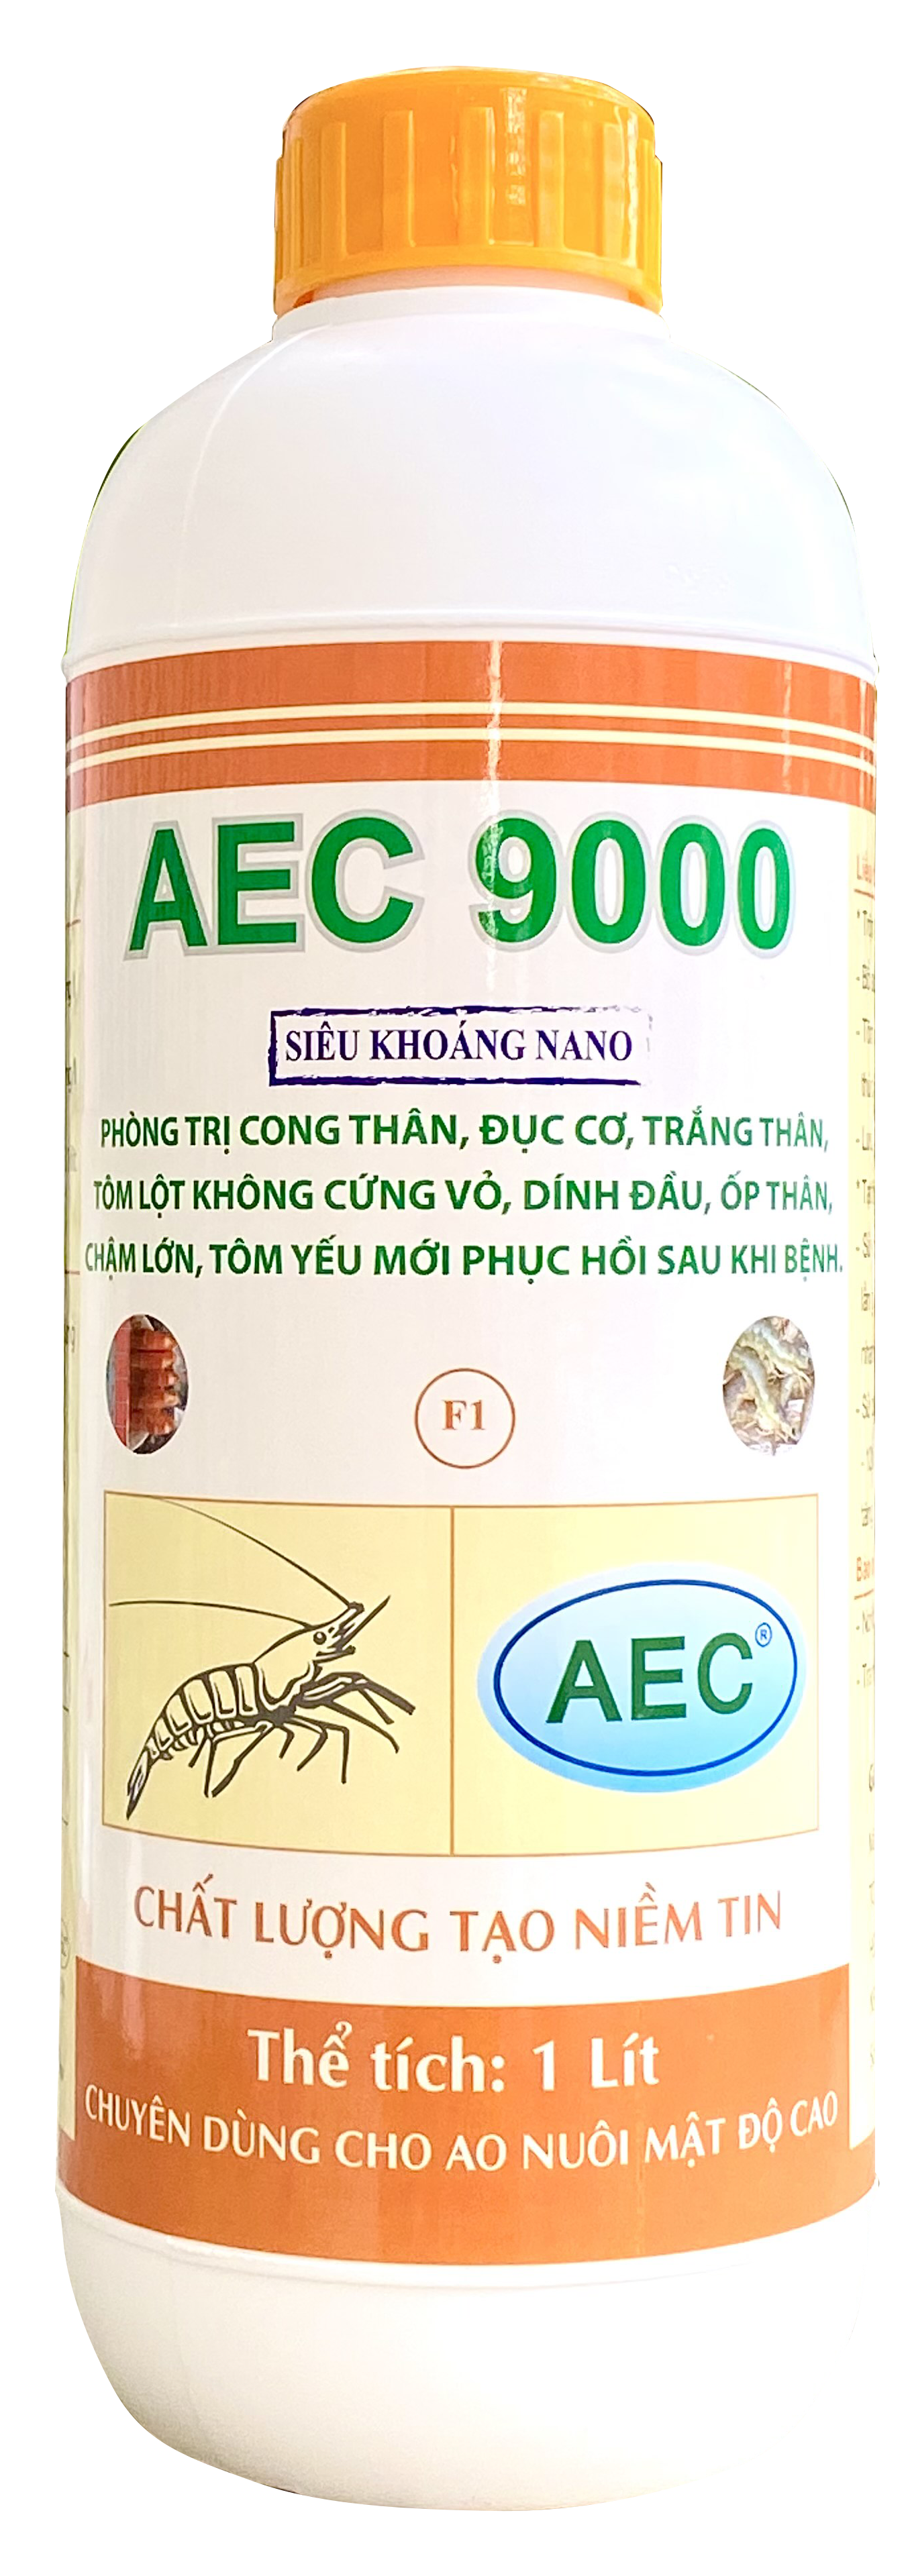 AEC 9000 - Khoáng chất phòng, trị công thân, đục cơ, trắng thân, mềm vỏ, ốp thân, chậm lớn